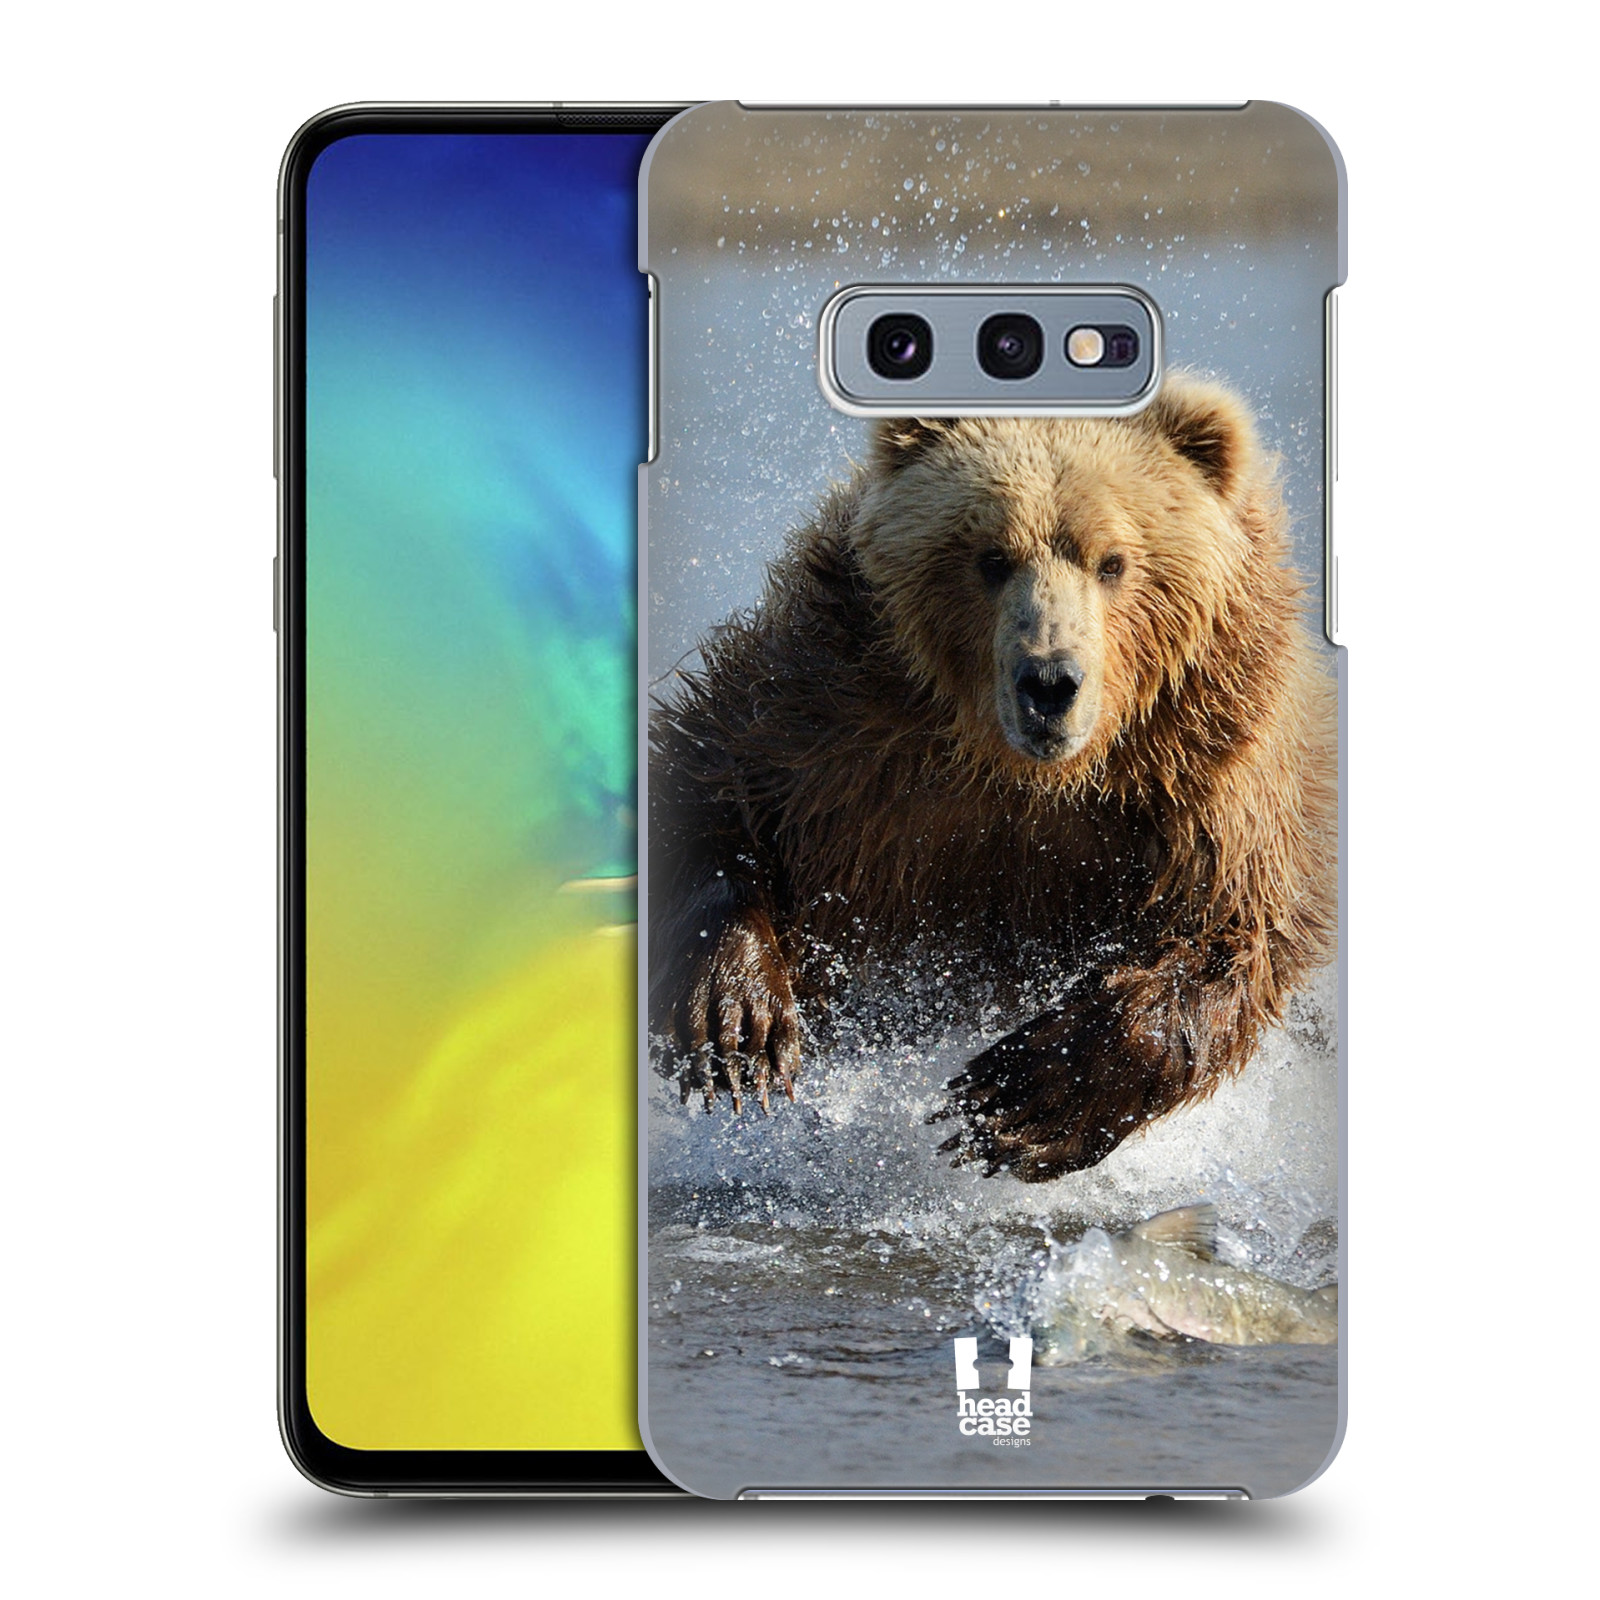 Pouzdro na mobil Samsung Galaxy S10e - HEAD CASE - vzor Divočina, Divoký život a zvířata foto MEDVĚD GRIZZLY HŇEDÁ